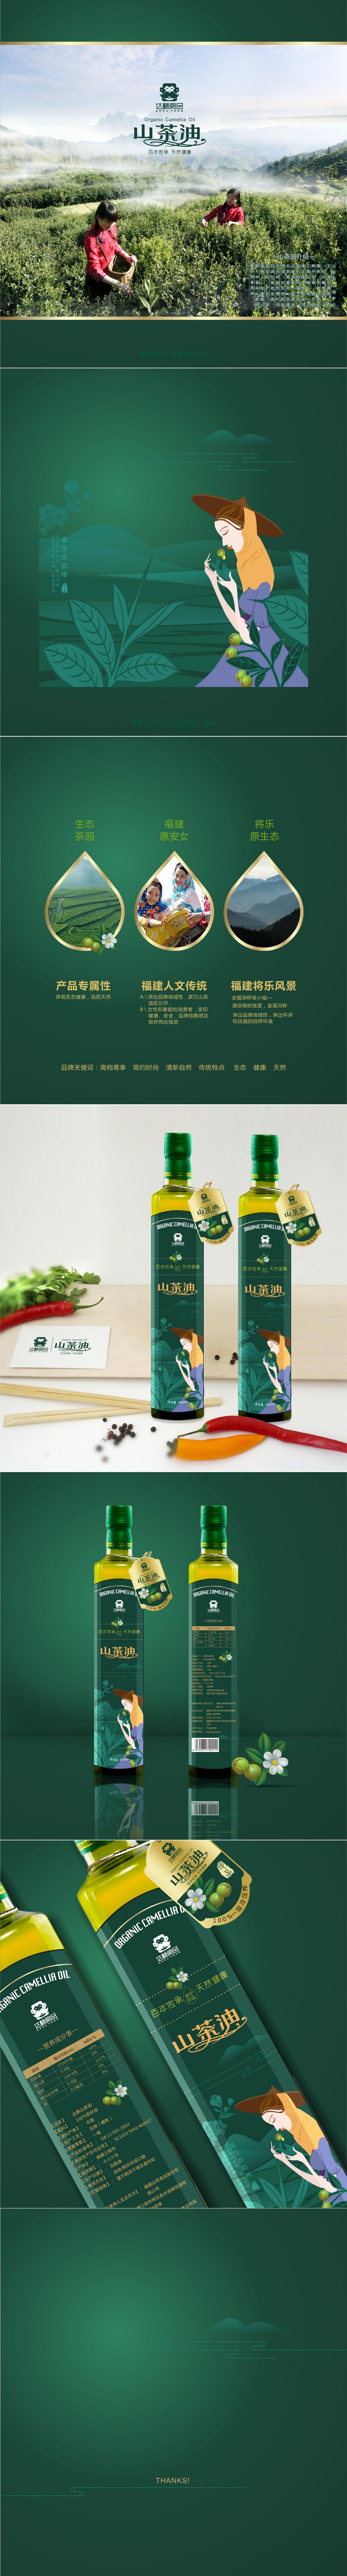 山茶油包装设计 深圳食品包装设计公司